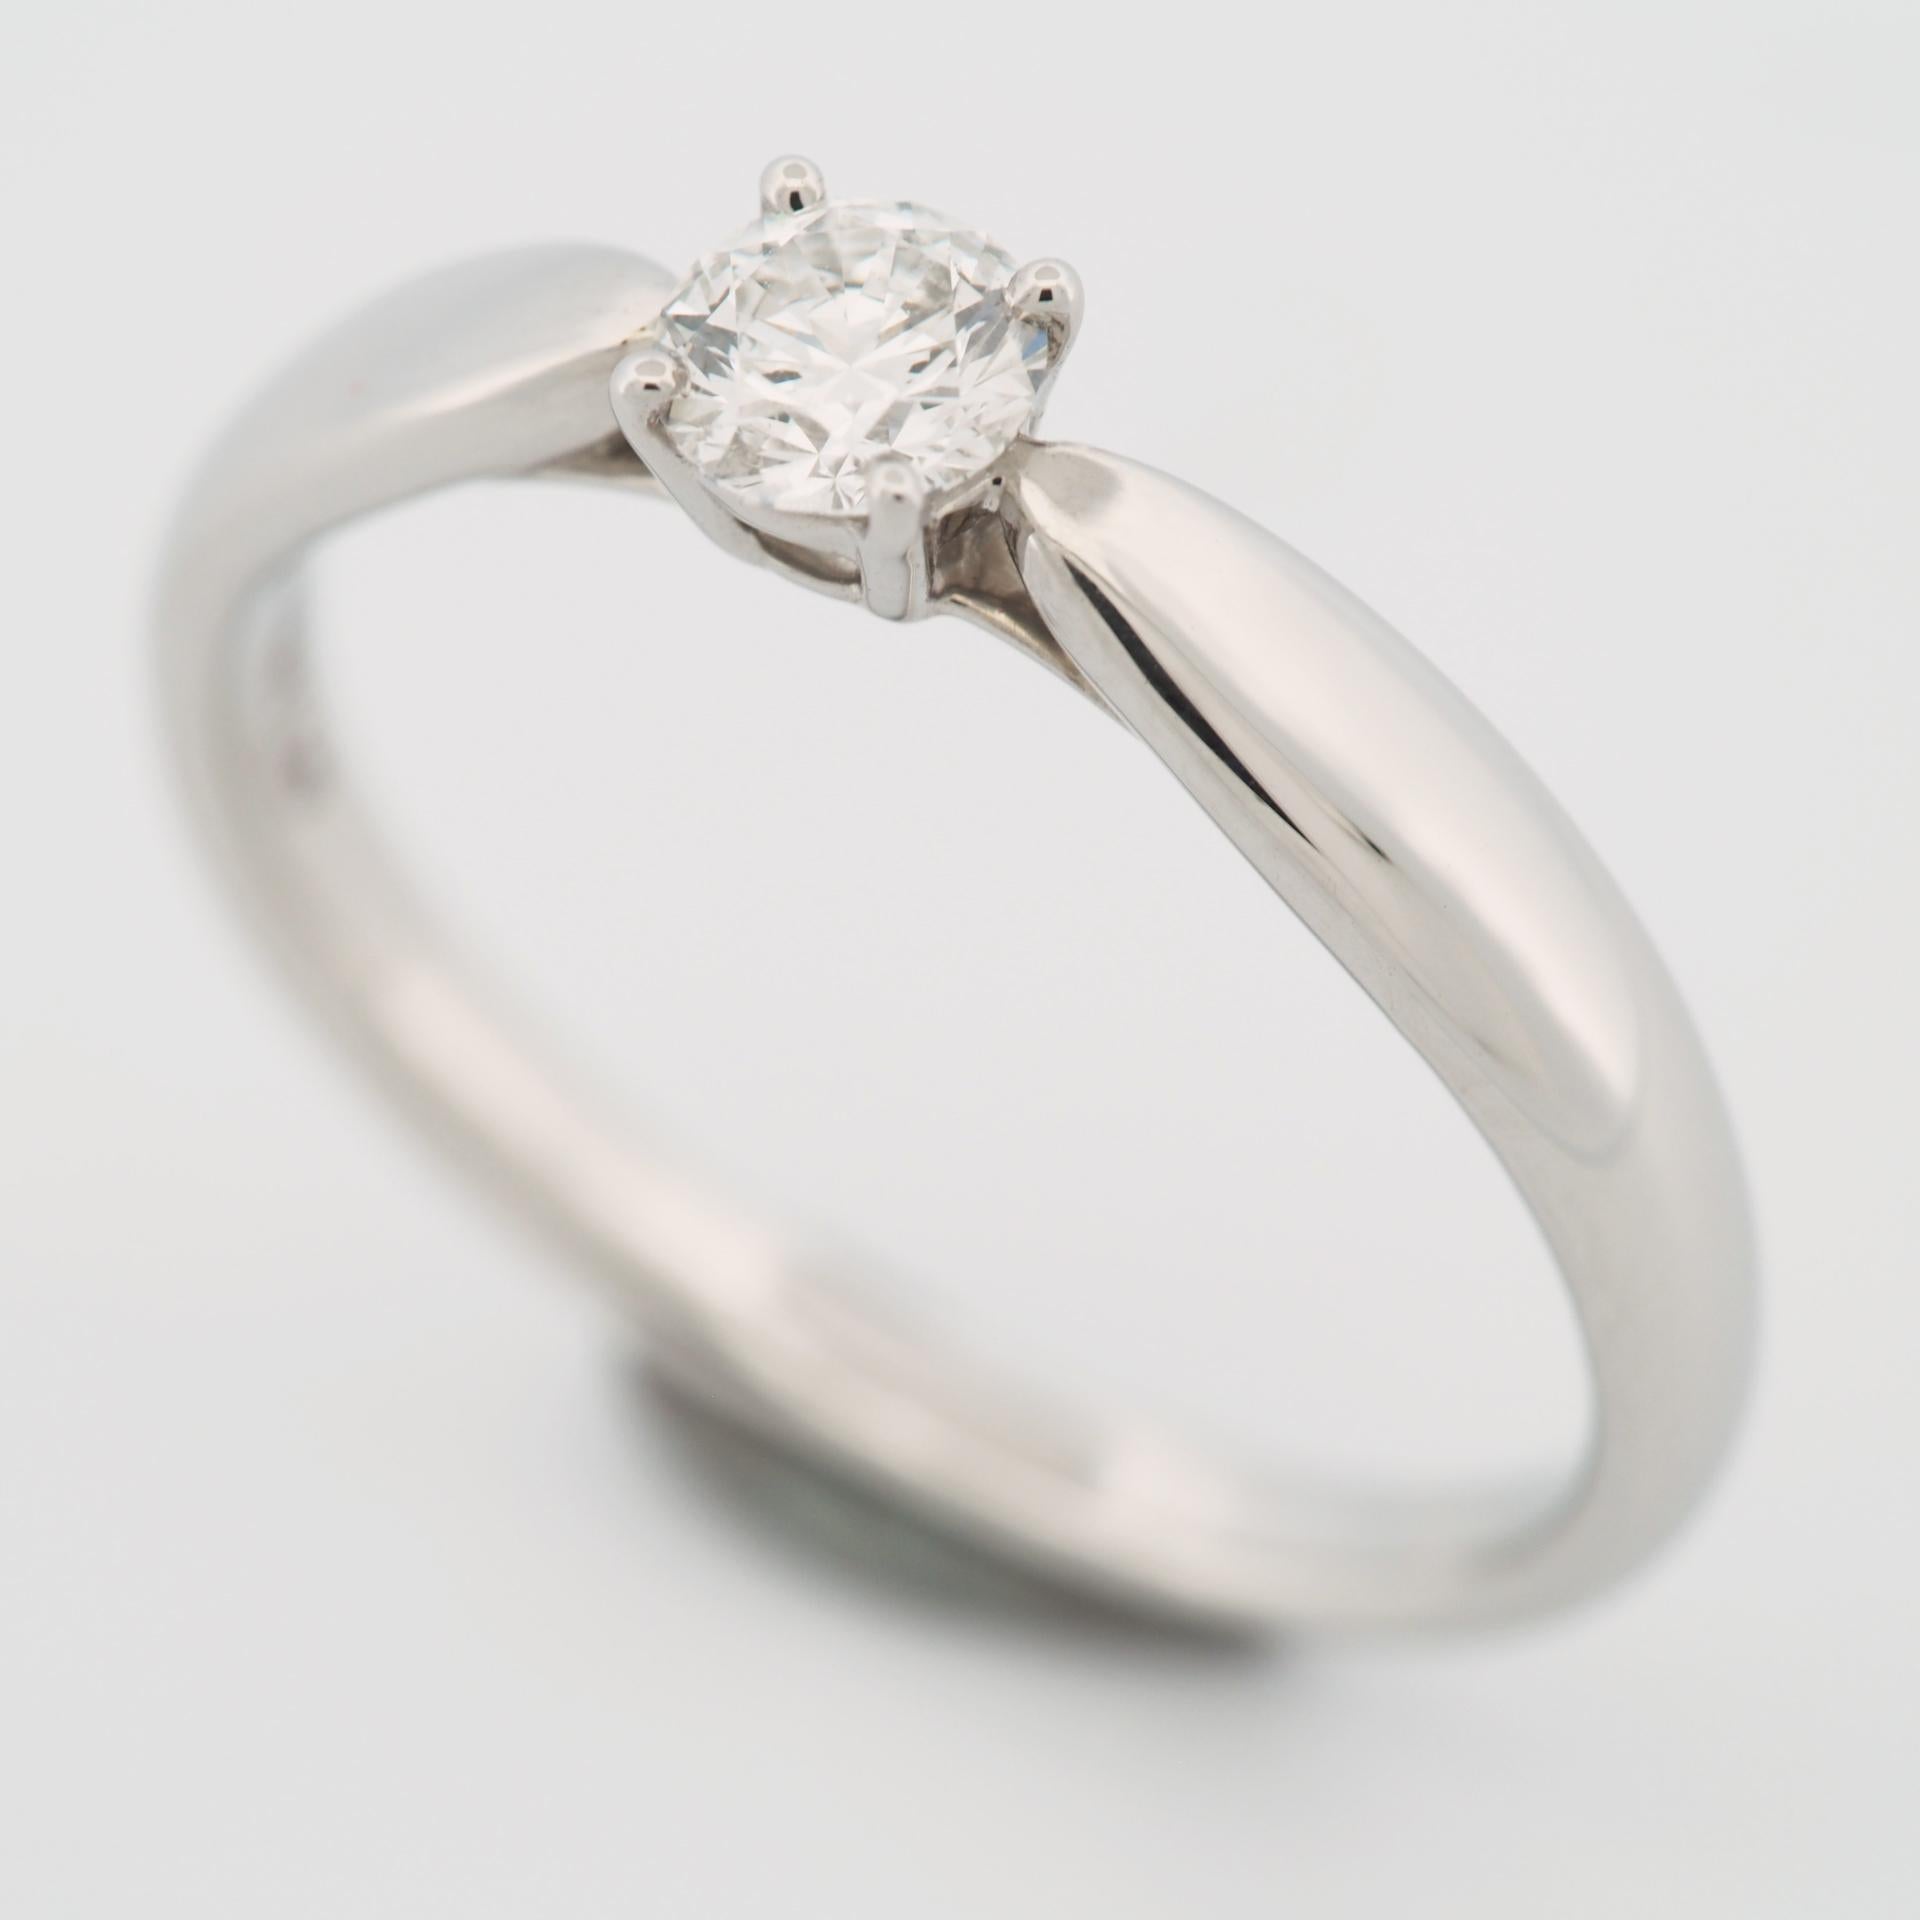 Article : Bague Tiffany Harmony Solitaire Diamond Ring 
Pierres : Diamant / 0.24ct
Couleur : G
Clarté : VS1
Polonais : Excellent
Symétrie : Excellent
Fluorescence : Bleu moyen
Métal : Platine 950
Taille de la bague : TAILLE US 5.75 TAILLE UK K